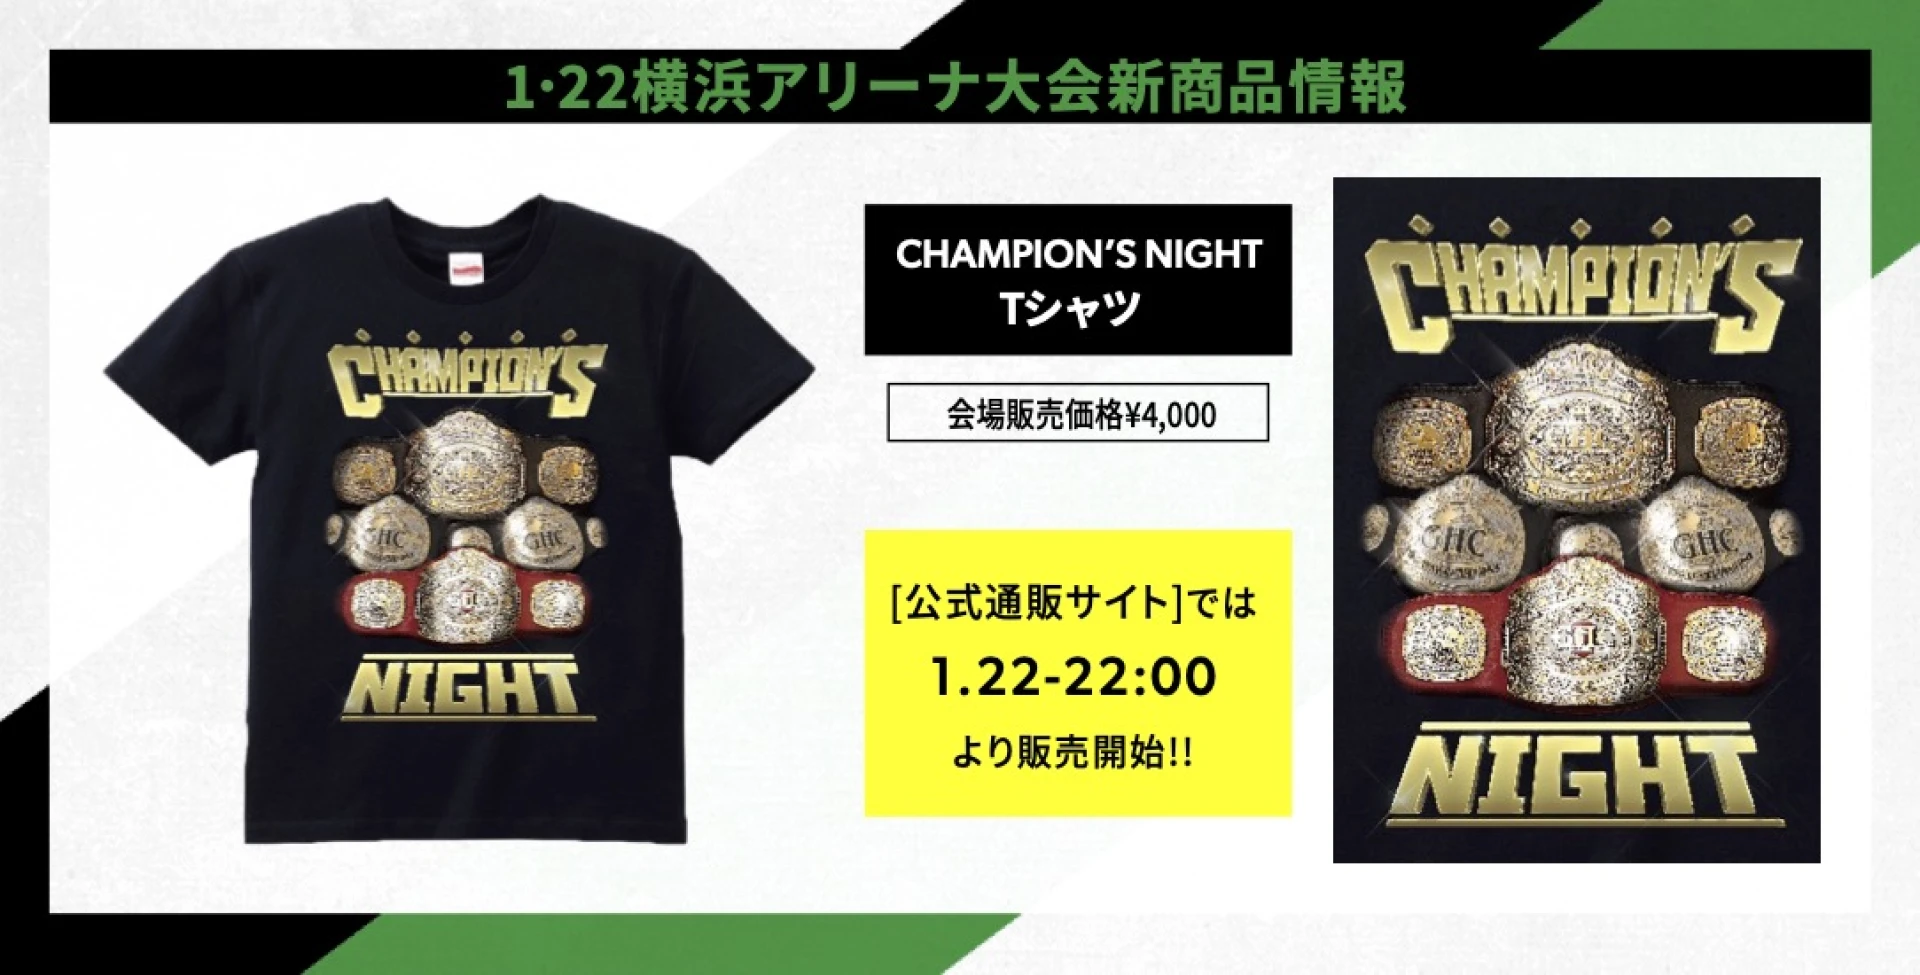 【緊急決定!! 新商品情報】CHAMPION’S NIGHT Tシャツ登場